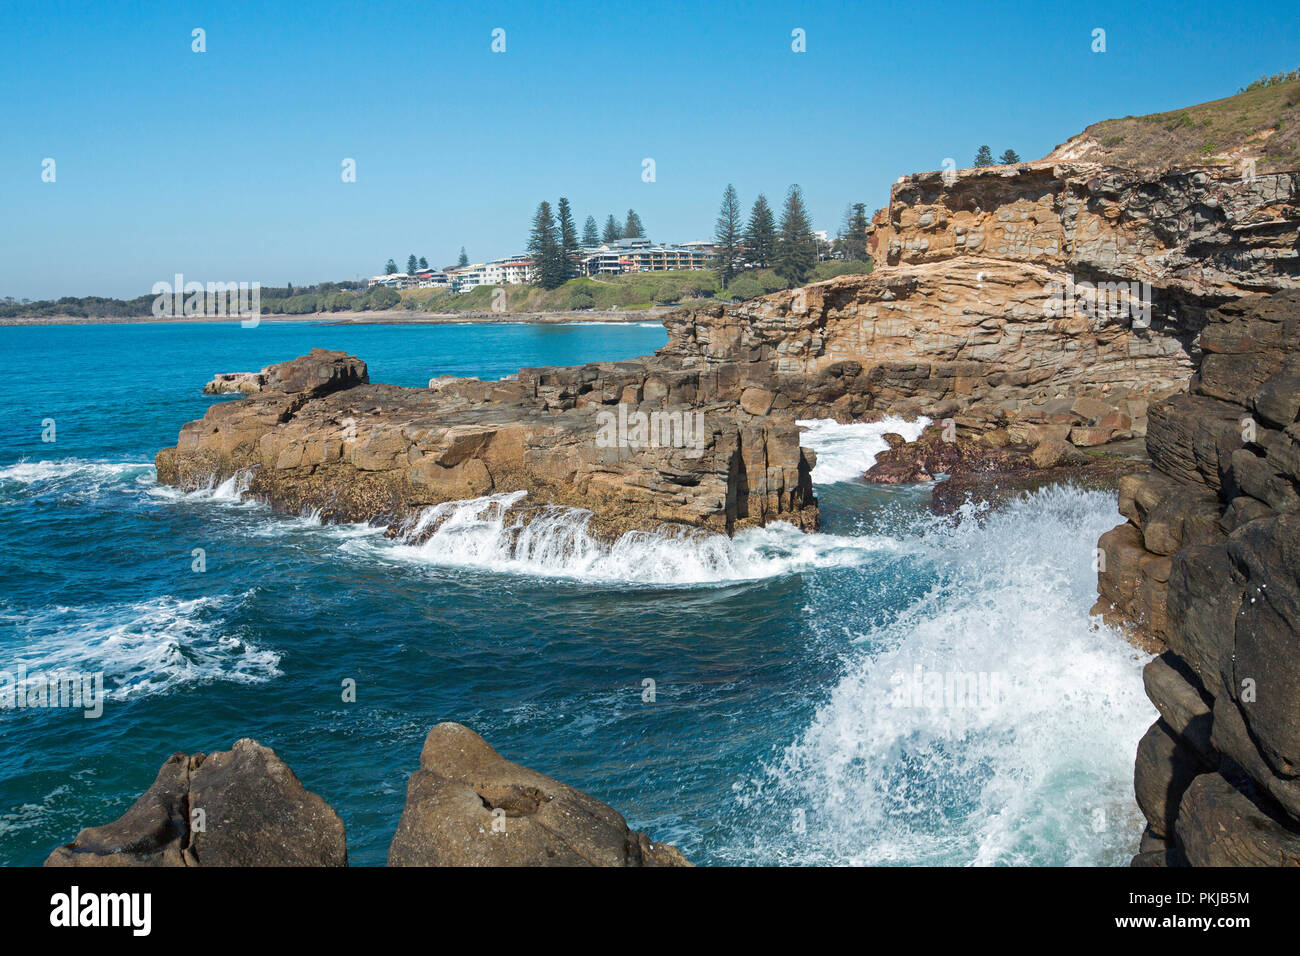 Las olas del Océano Pacífico rompiendo sobre las rocas al pie de los escarpados acantilados en Yamba con la ciudad en la distancia bajo un cielo azul, NSW, Australia Foto de stock